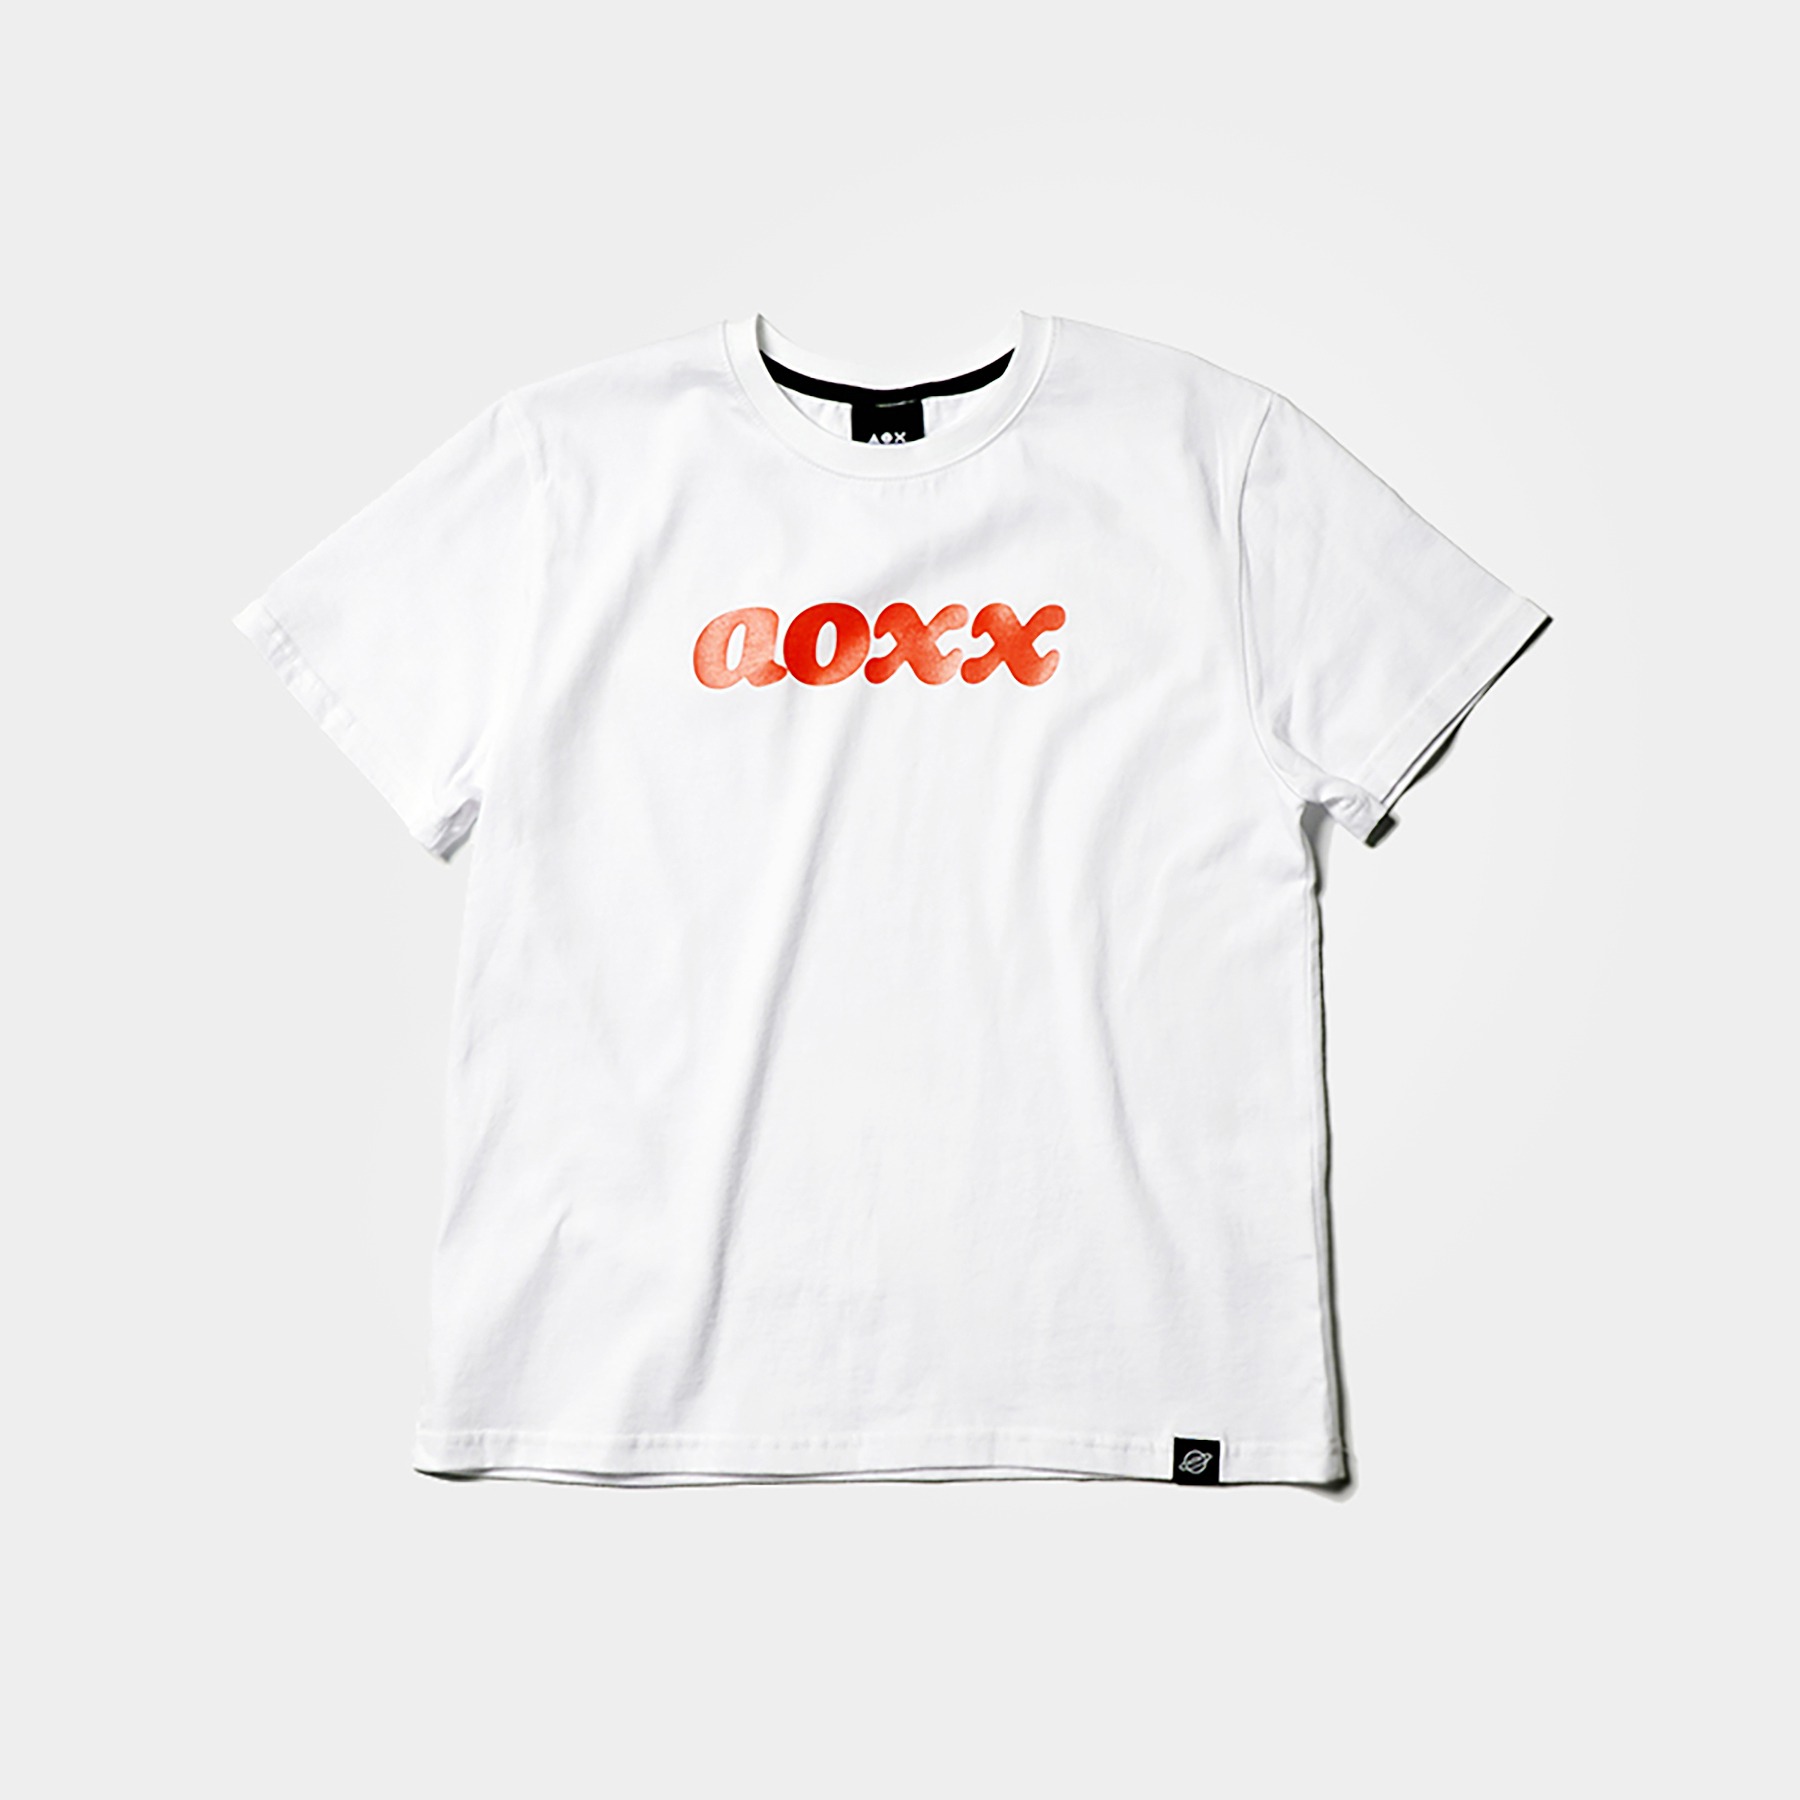 AOXX t-shirt